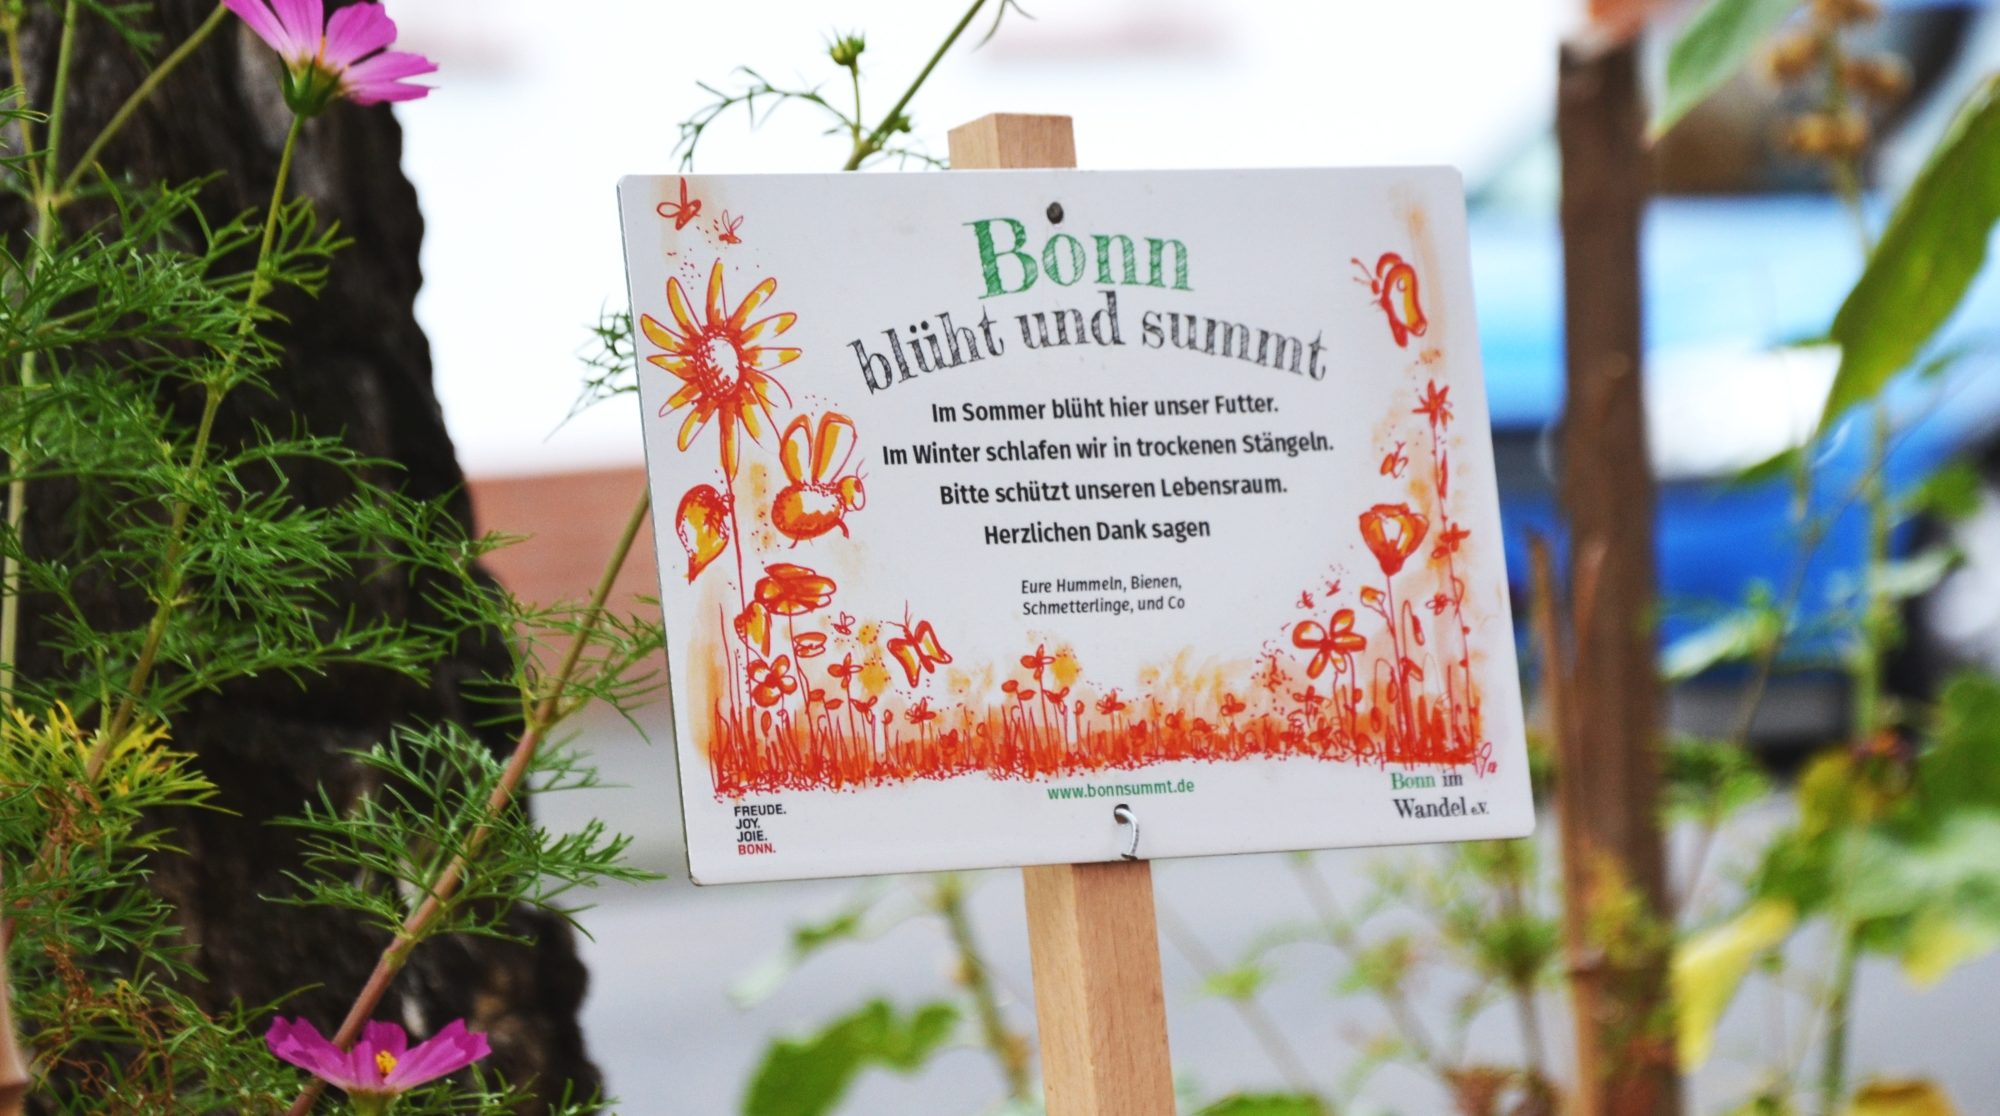 Blühschild von Bonn blüht und summt auf eine bunten Baumscheibe